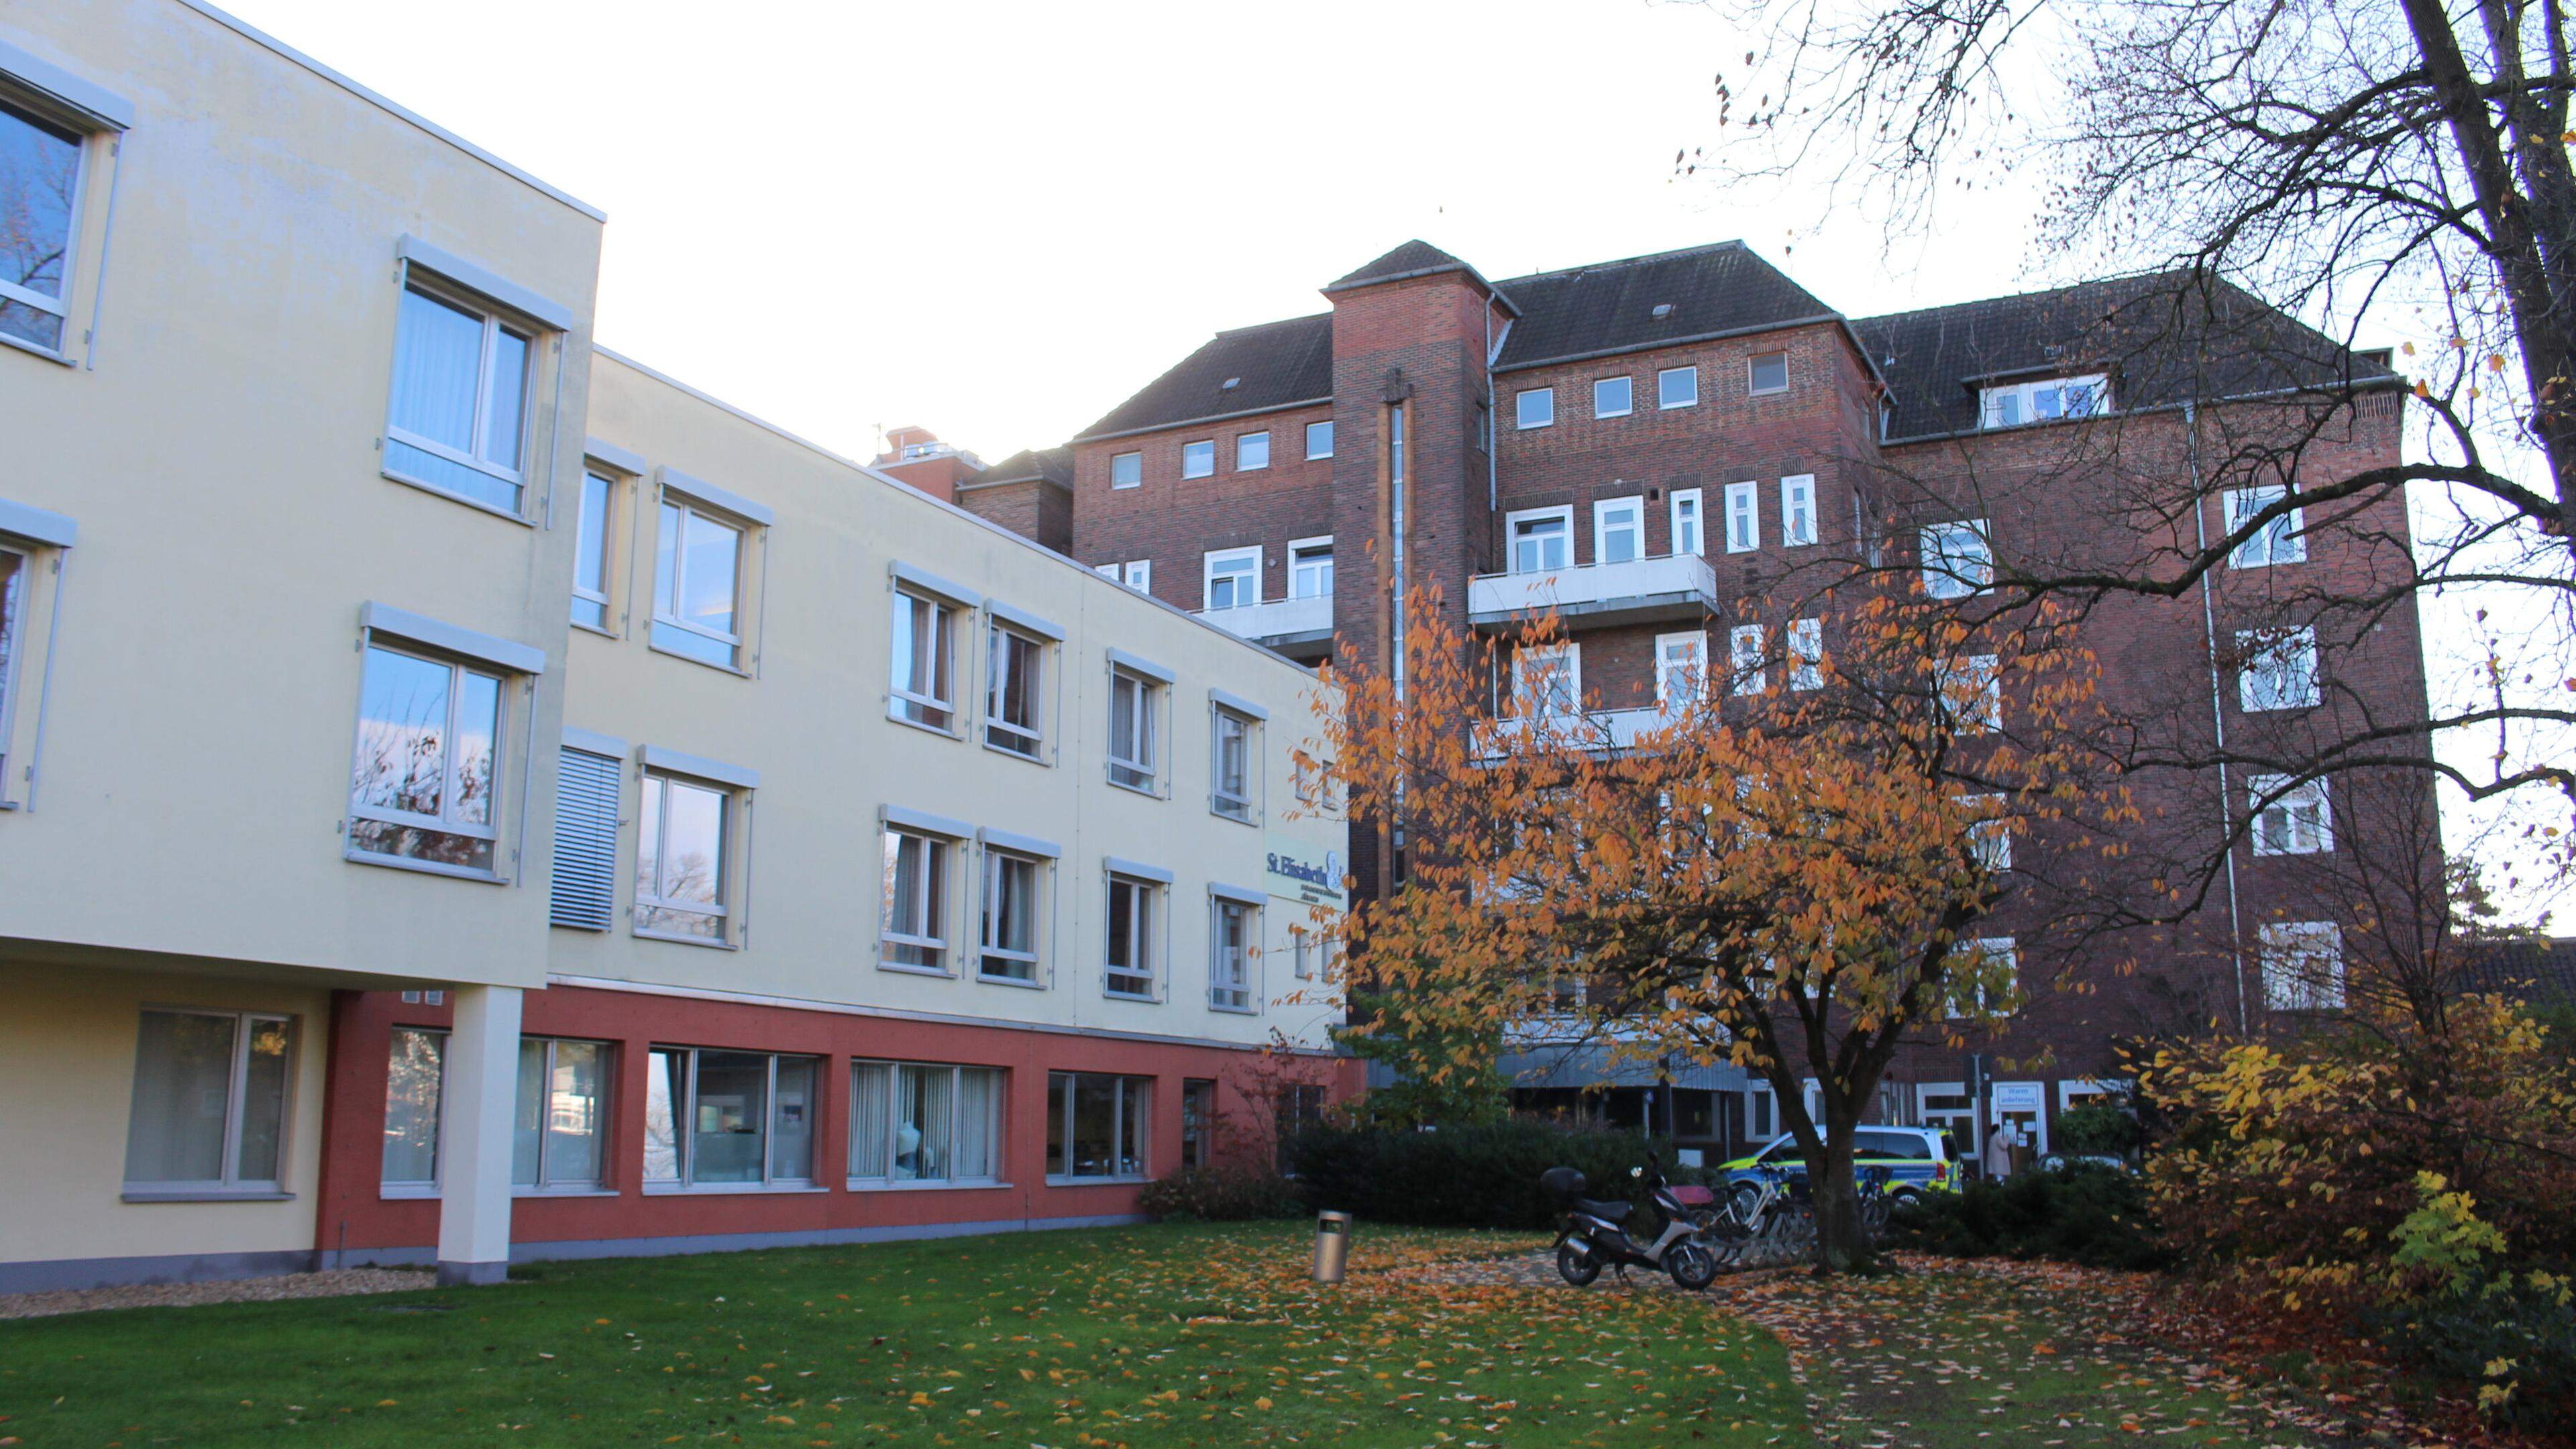 32 Millionen Euro betrug das Defizit der beiden Krankenhäuser in Linnich und Jülich im Jahr 2022. Mit dem Insolvenzverfahren startete die Stadt Jülich als neuer Träger des verbliebenen Jülicher Krankenhauses zum 1. Juli 2023 wieder bei Null.